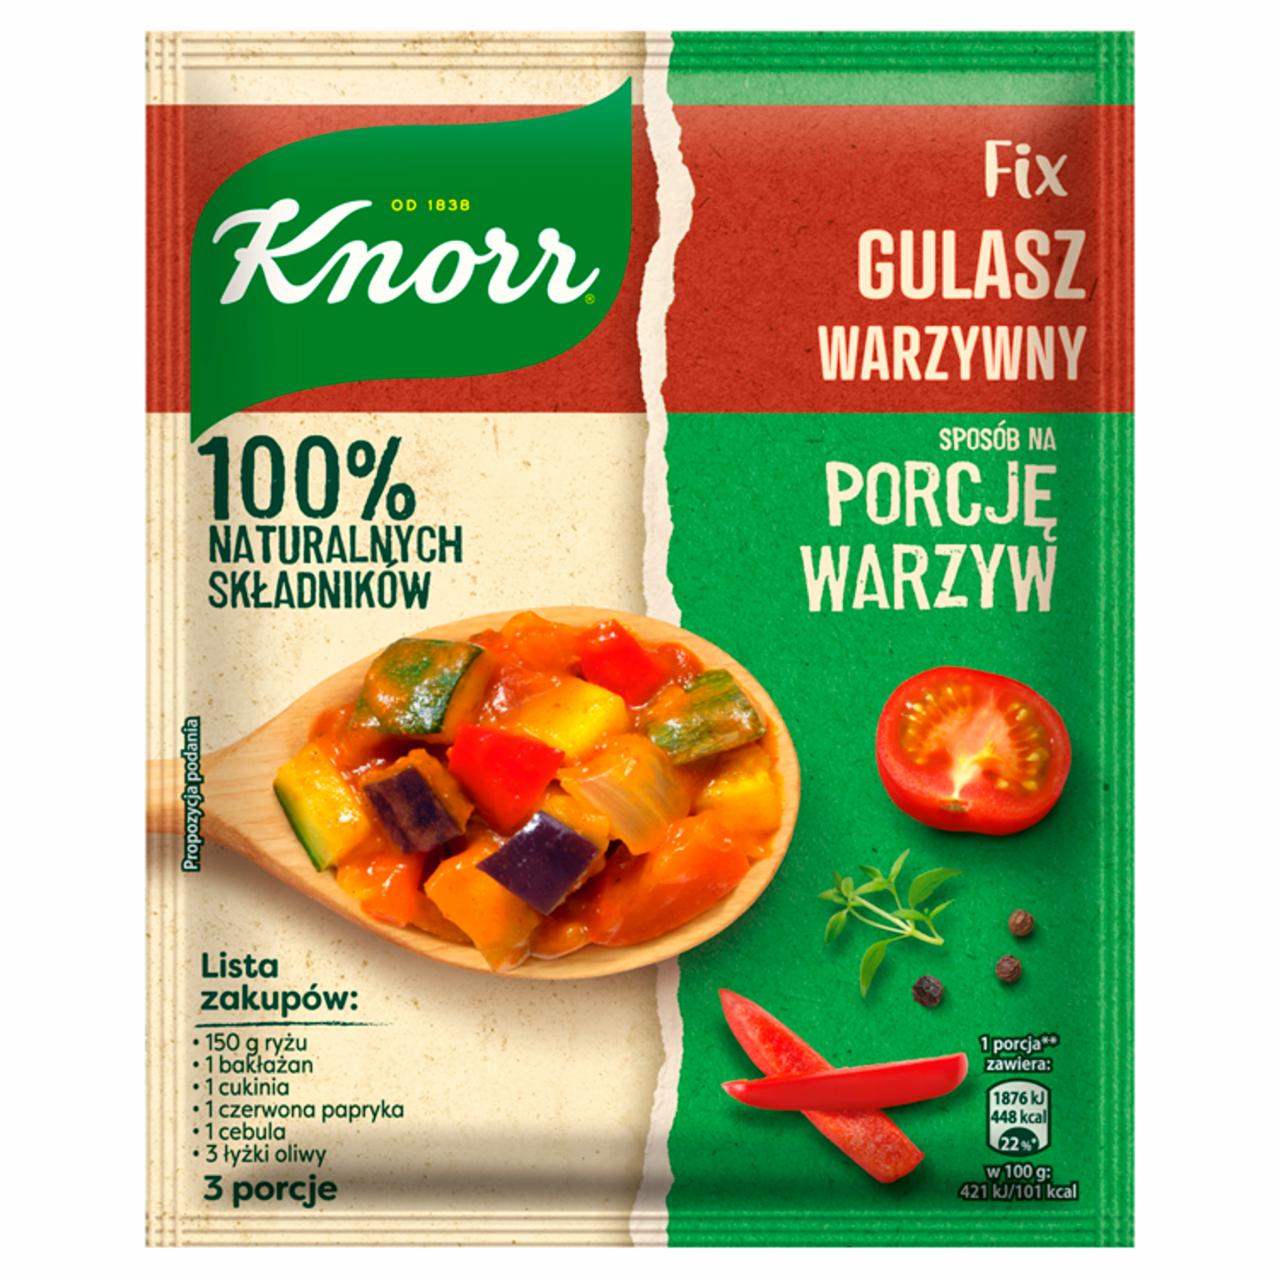 Zdjęcia - Knorr Fix Gulasz warzywny 58 g